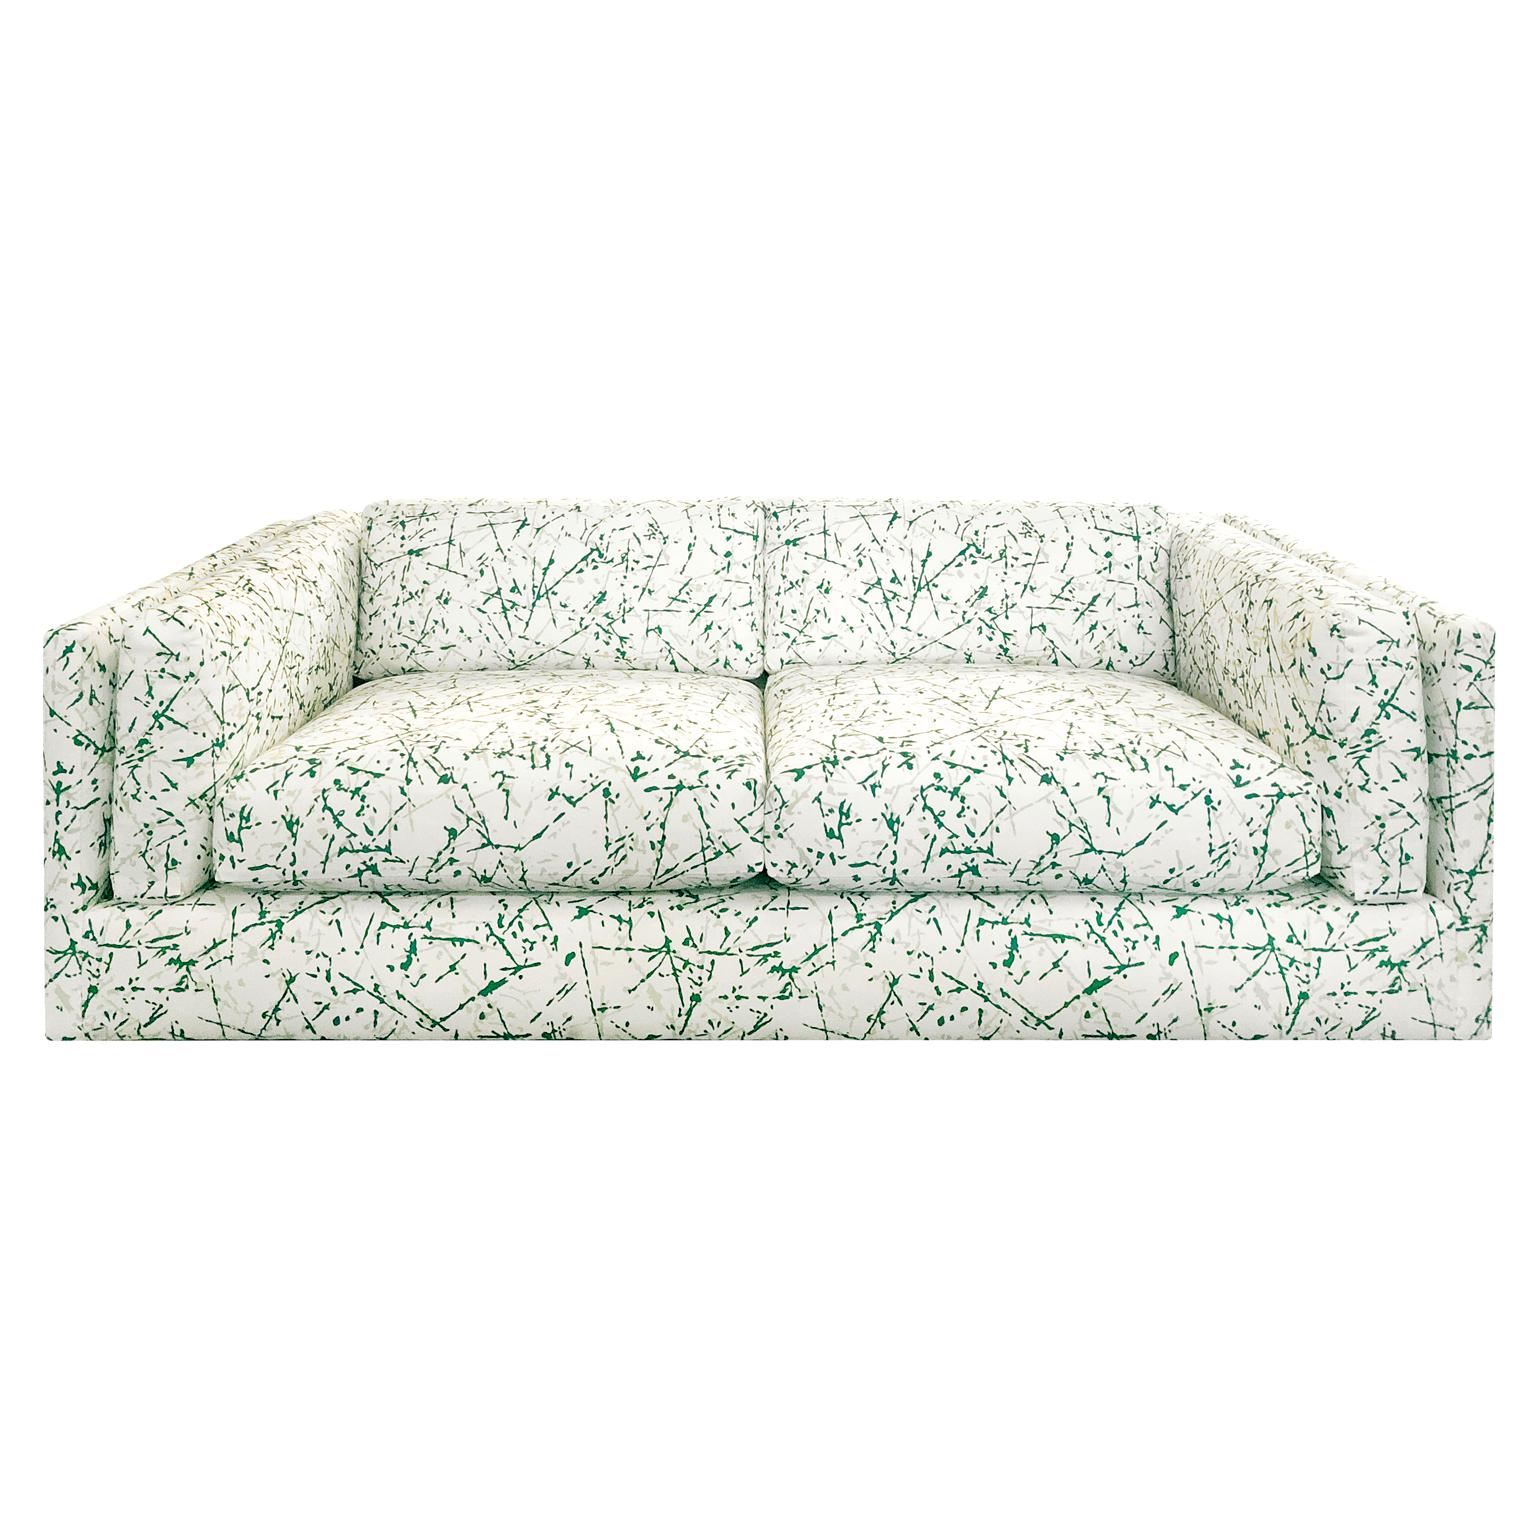 Harvey Probber sofa newly upholstered in green splatter upholstery, USA, 1970s.